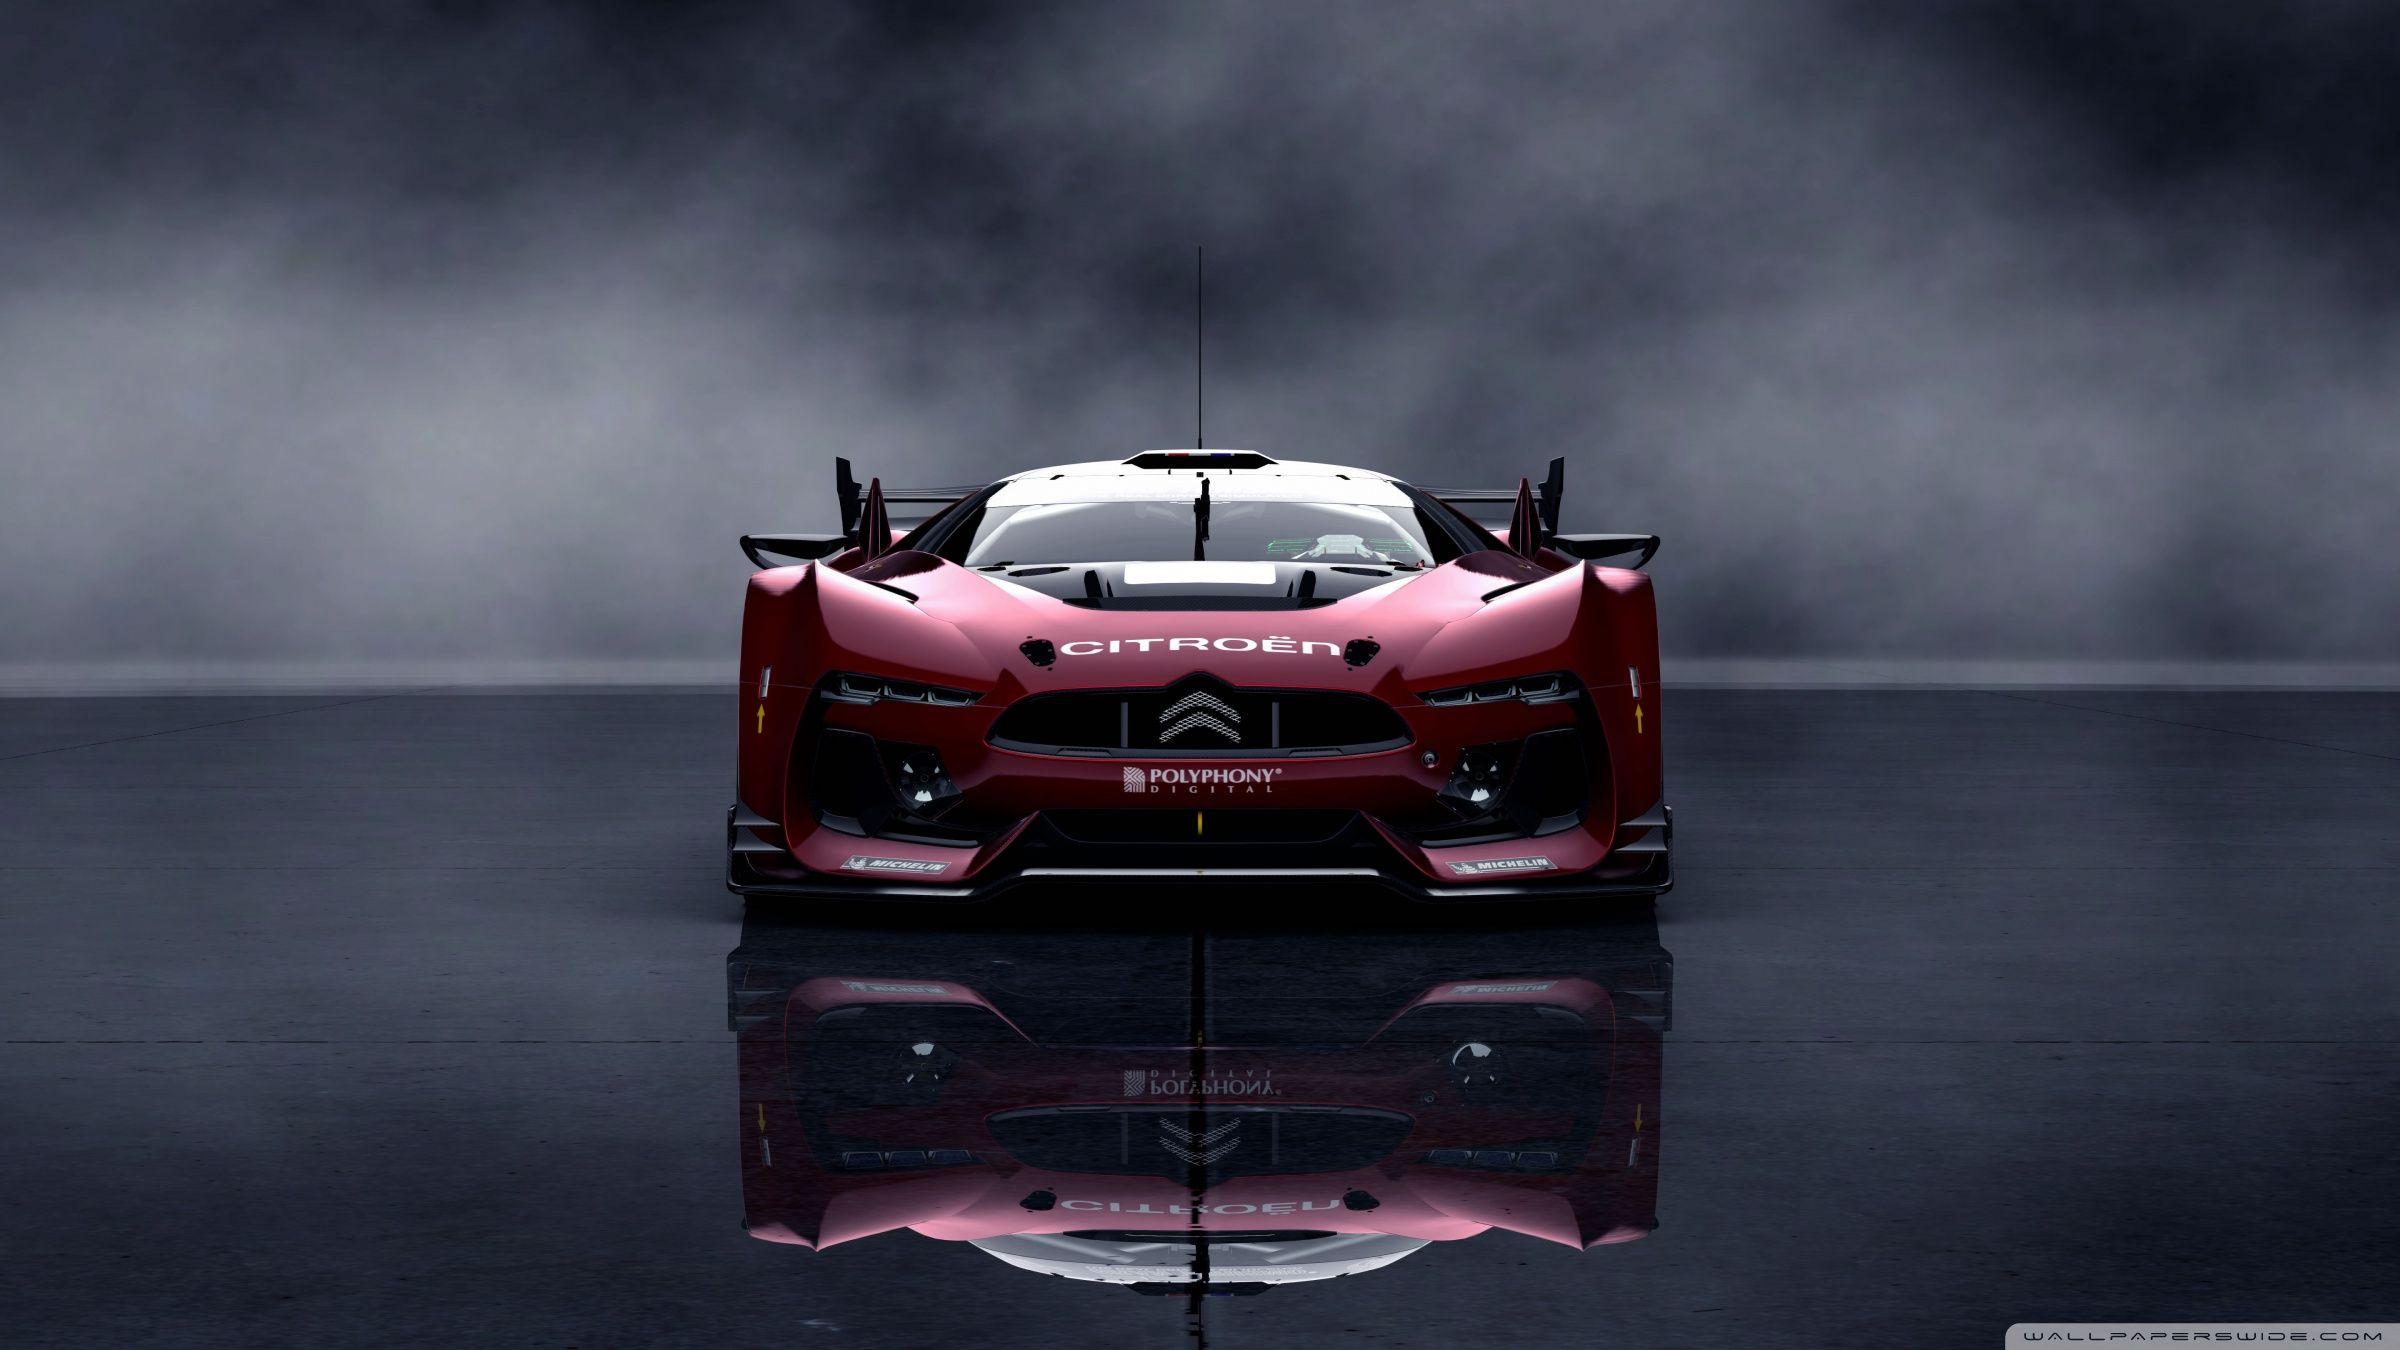 Citroen GT Race Car ❤ 4K HD Desktop Wallpaper for • Wide & Ultra